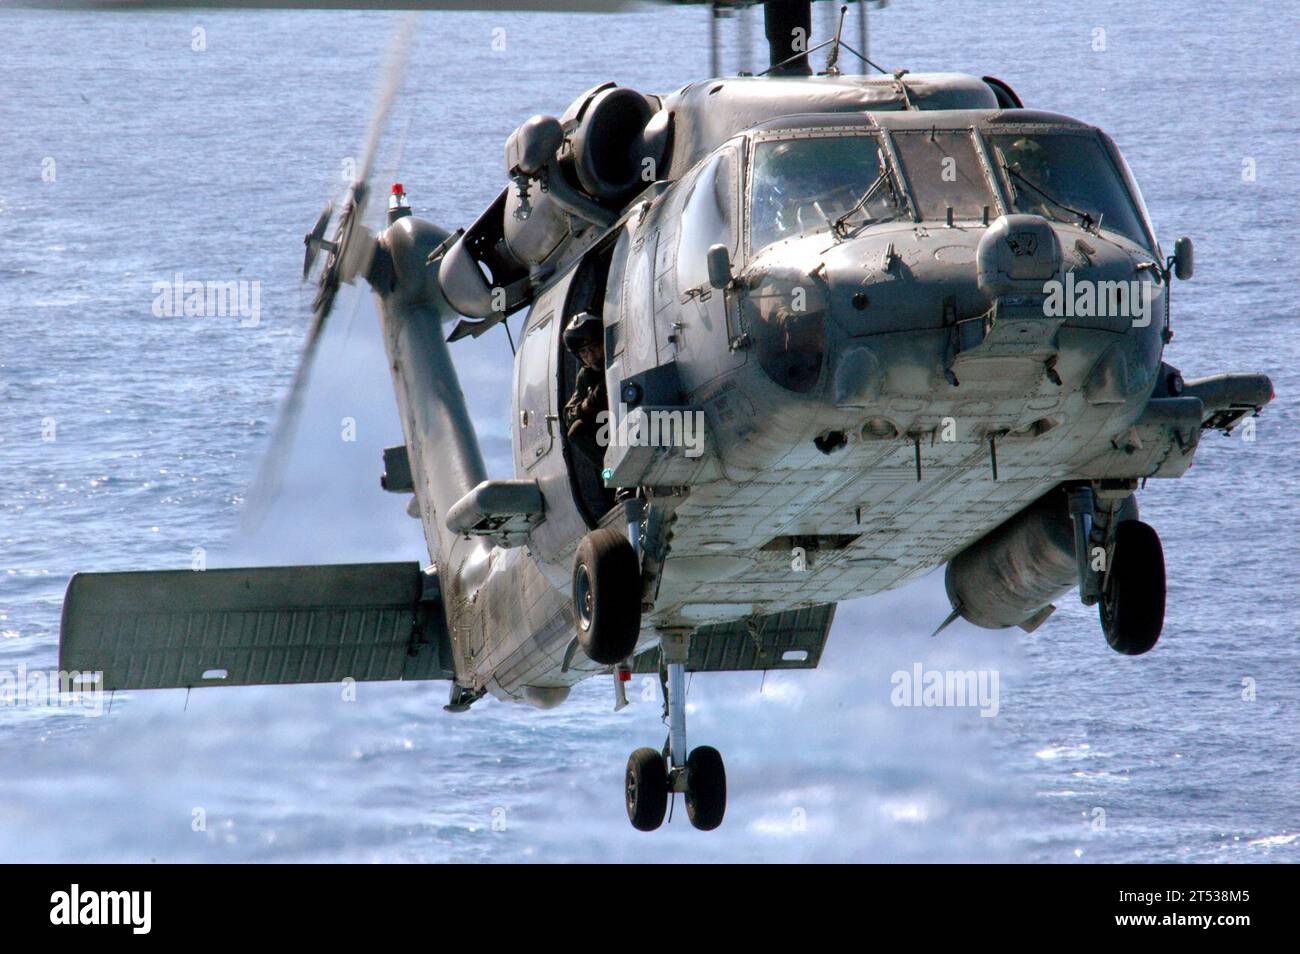 0704051635S-005 SOUTH CHINA SEA (5 aprile 2007) - un HH-60H Seahawk del "Black Knights" dell'Helicopter Anti-Submarine Squadron (HS) 4 si abbassa in posizione sopra il ponte di volo della USS Ronald Reagan (CVN 76) durante un'evoluzione di offload di ordigni con la nave da munizione Military Sealift Command (MSC) USNS Flint (T-AE 32). Gli aviatori hanno scaricato oltre 126 bombole di munizioni durante l'evoluzione. Il Ronald Reagan Carrier Strike Group è attualmente in fase di sviluppo a sostegno delle operazioni militari statunitensi nel Pacifico occidentale. Marina degli Stati Uniti Foto Stock